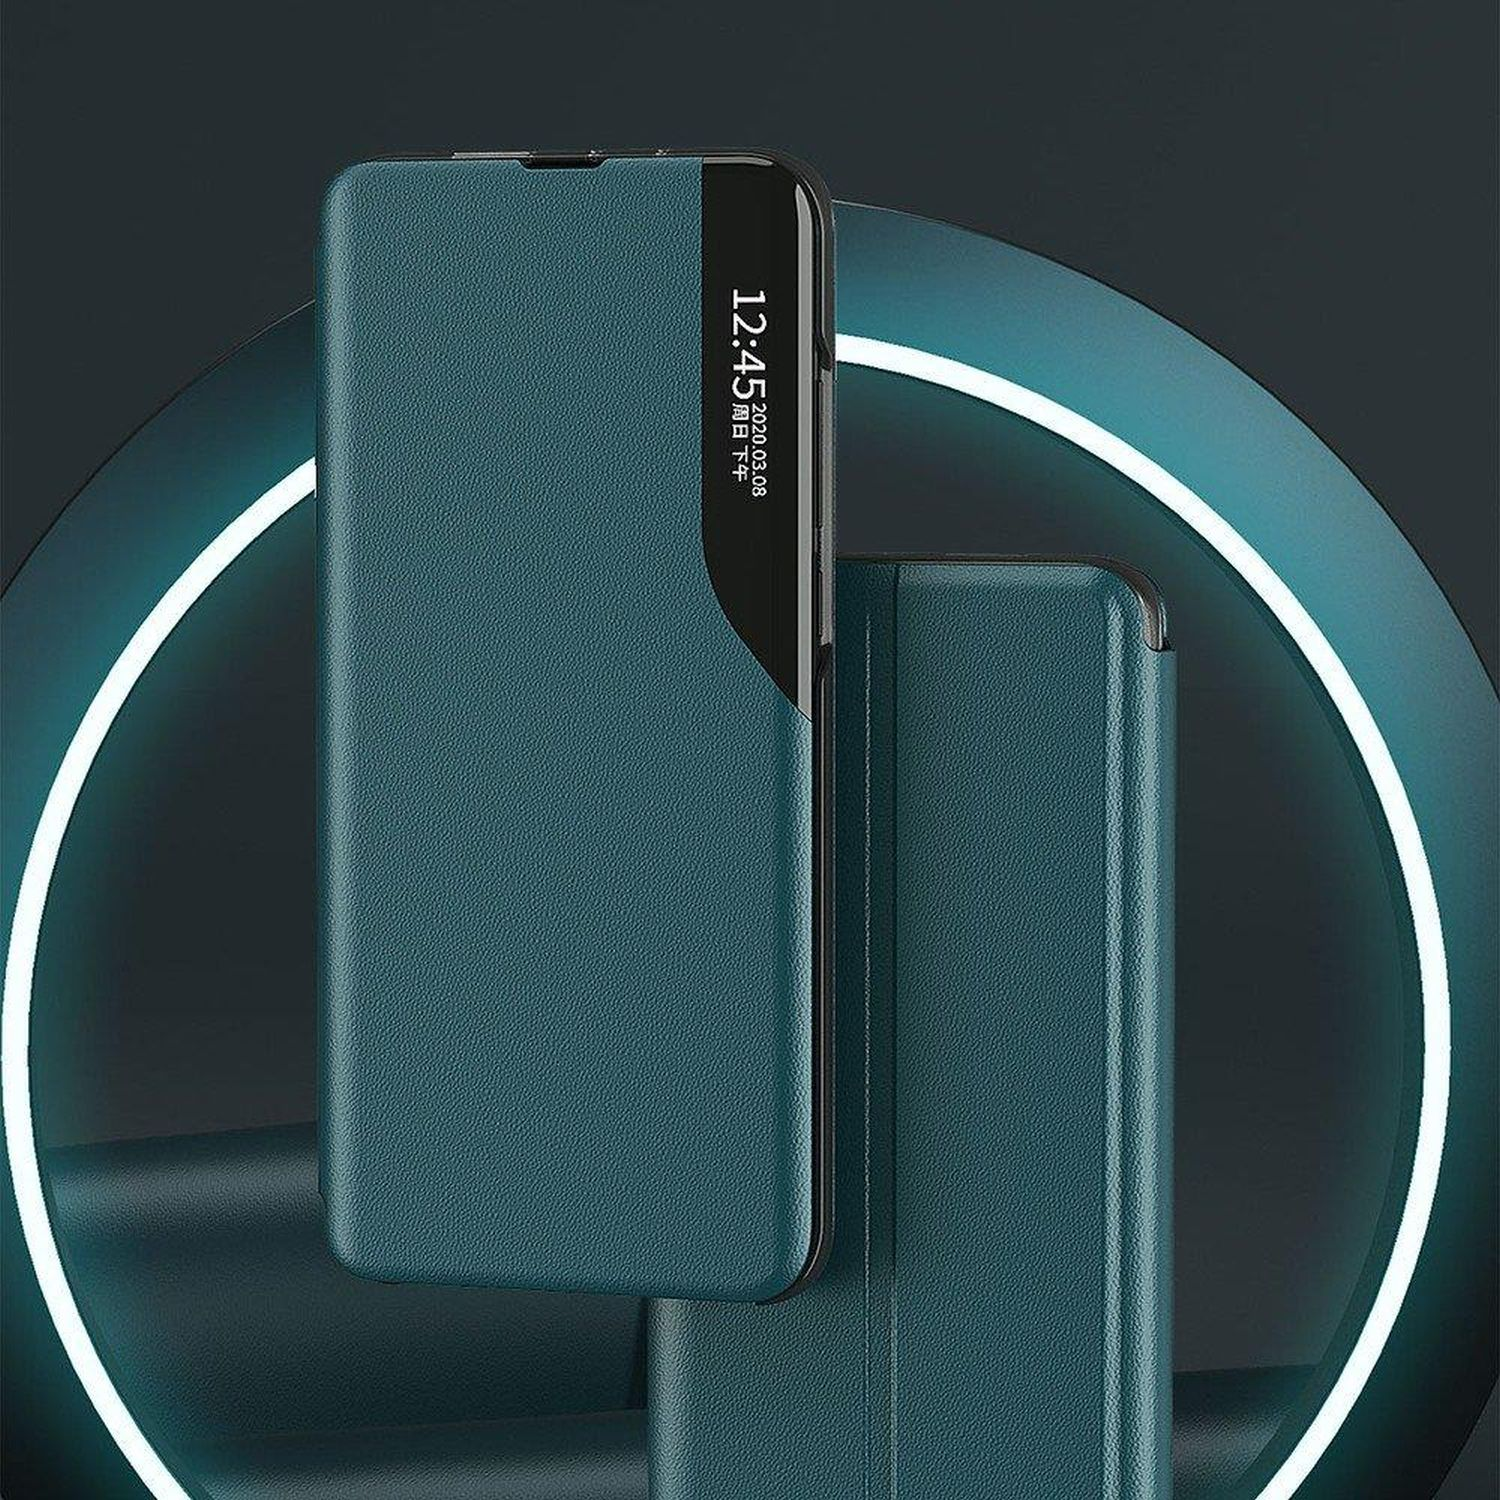 Blau View S20 Galaxy Case, Samsung, Bookcover, Ultra, COFI Smart